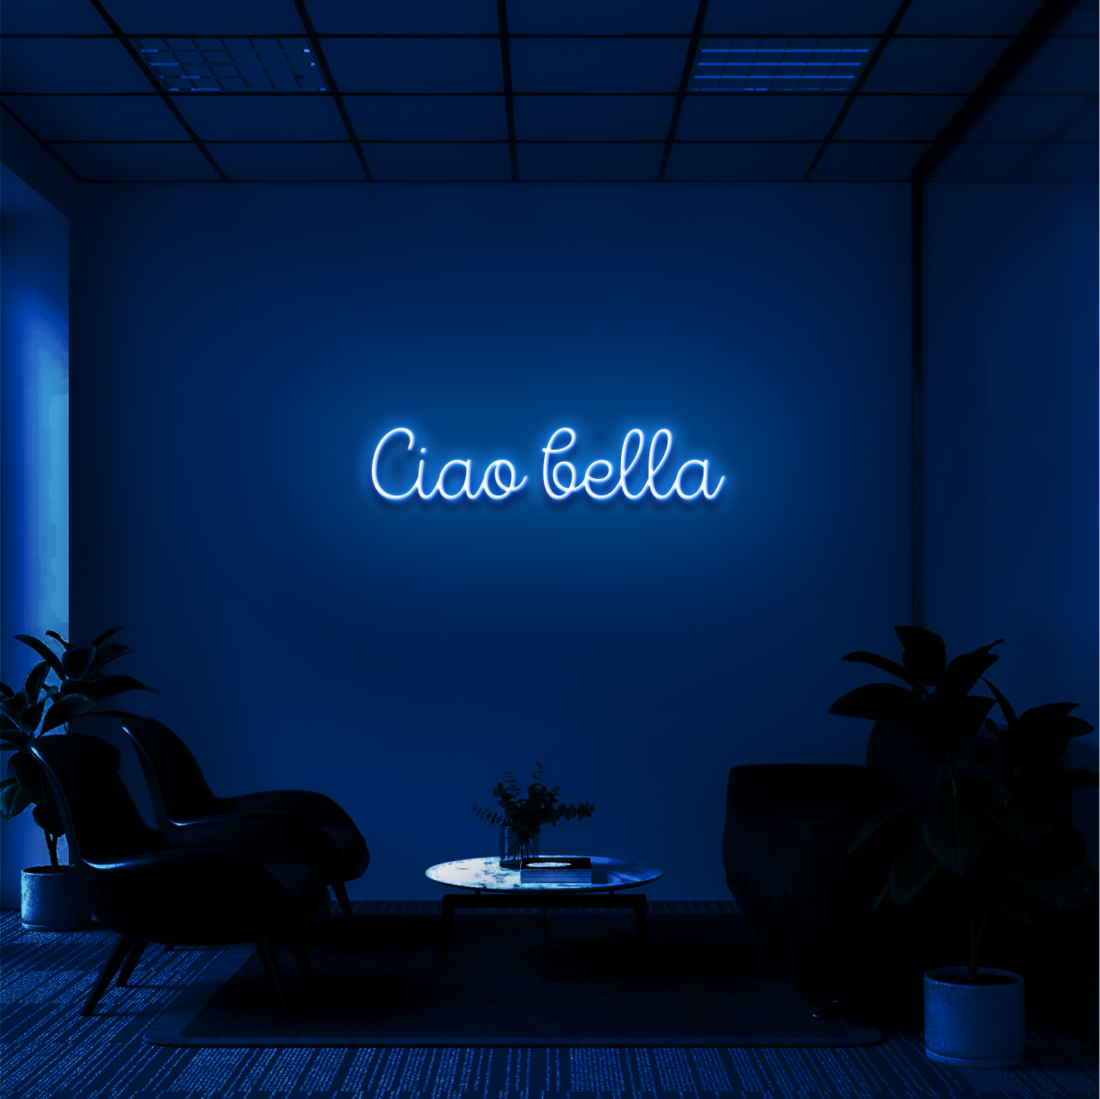 "CIAO BELLA" - NEONIDAS NEONSCHILD LED-SCHILD